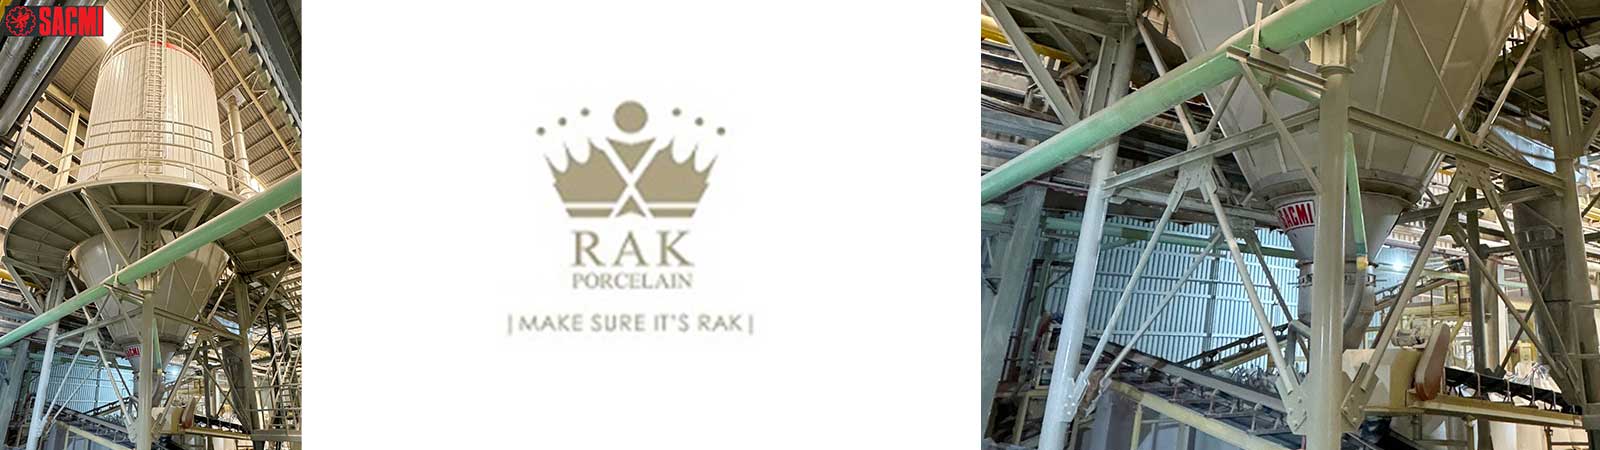 Con SACMI, Rak Porcelain vola a 36 milioni di pezzi l’anno di stoviglieria d’alta gamma